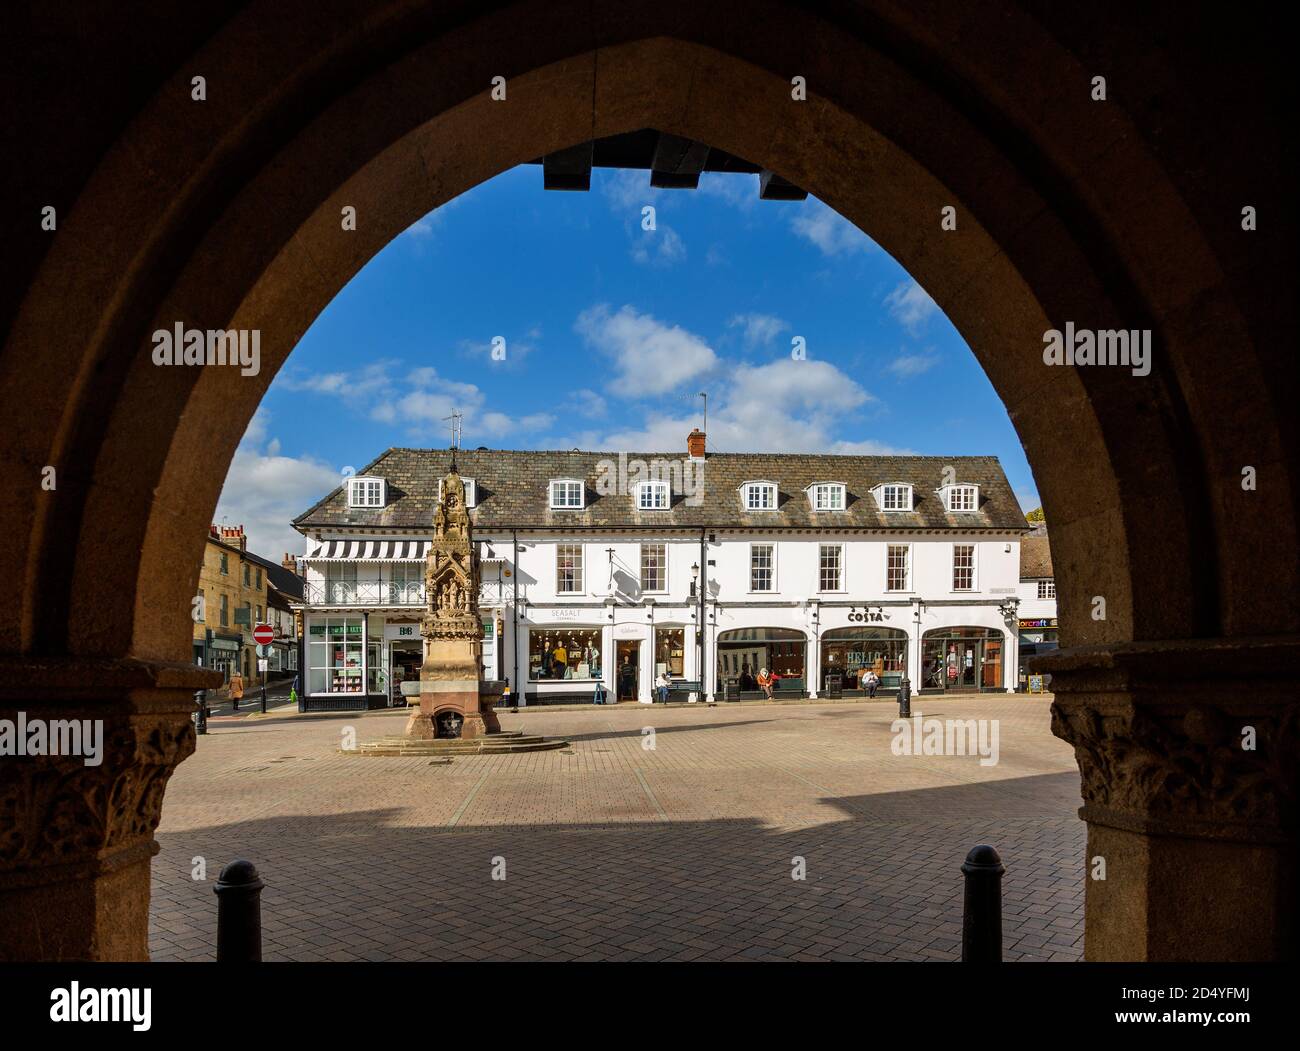 Historische Gebäude in der Stadt Market Square, Saffron Walden, Essex, England, Großbritannien Stockfoto